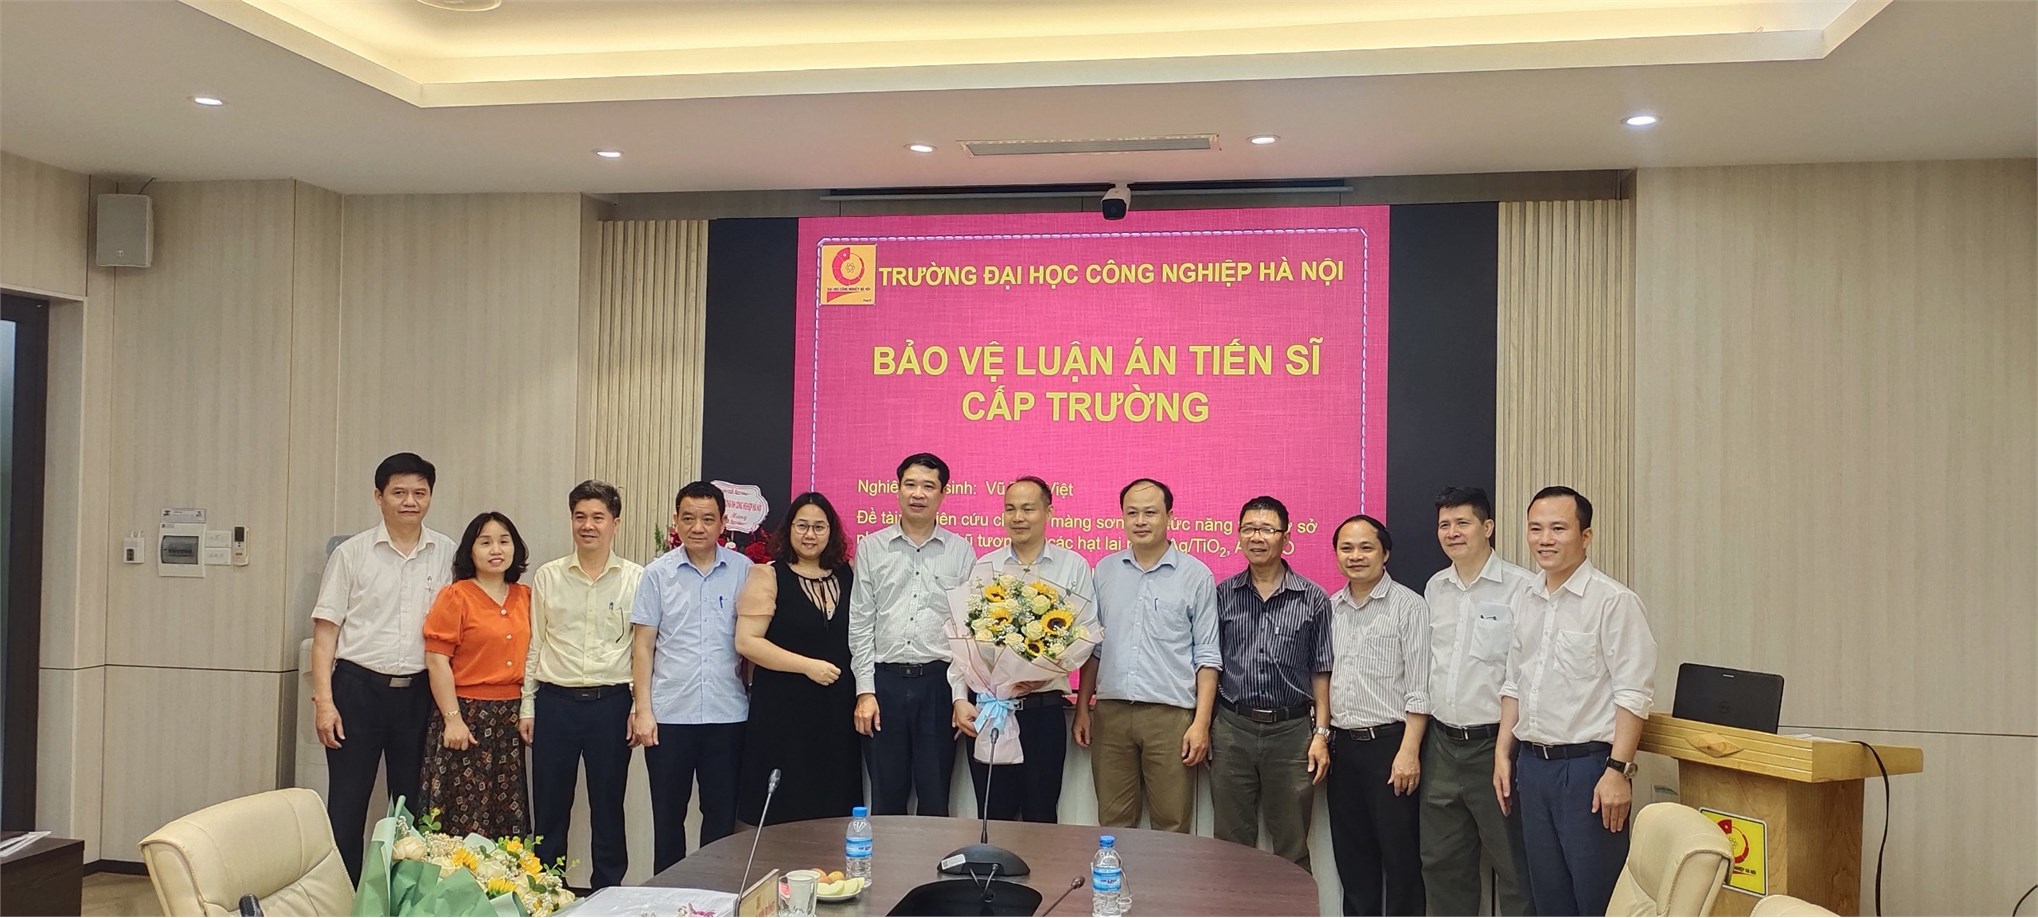 Tổ chức bảo vệ luận án tiến sĩ cấp Trường ngành Kỹ thuật Hóa học cho nghiên cứu sinh Vũ Tiến Việt